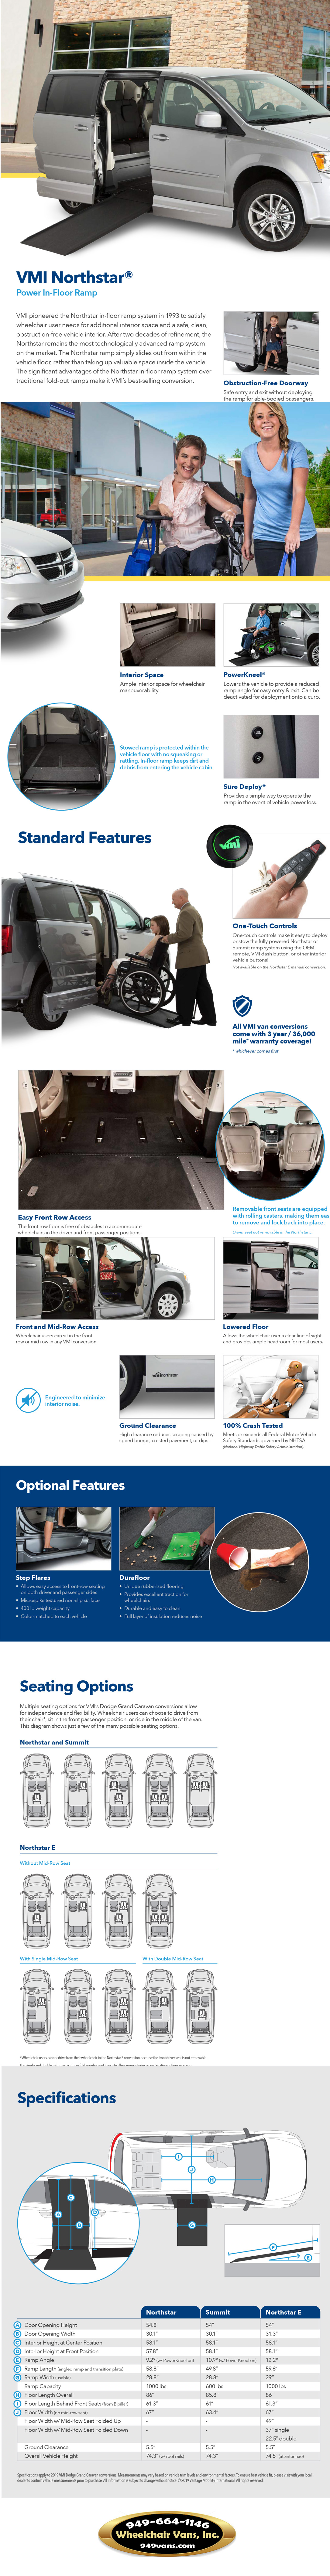 Dodge Grand Caravan VMI Northstar Power Infloor Wheelchair Van Conversion